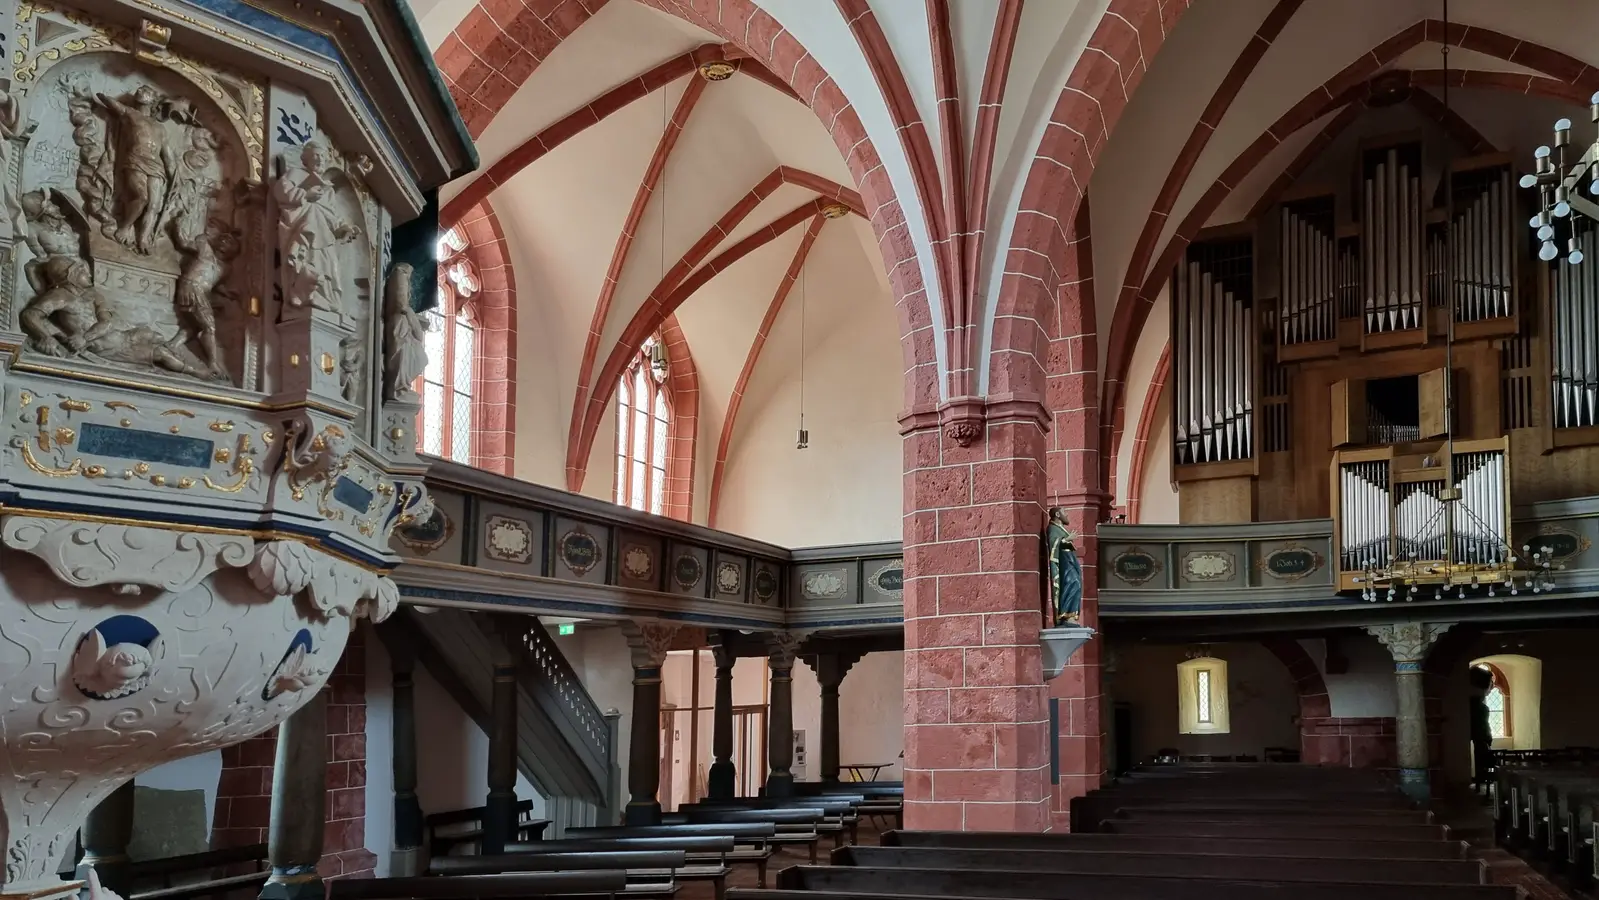 Sehenswerte Kirchen in Nordhausen, Ausflugsziele Harz, Ausflugstipps im Südharz, Sehenswürdigkeiten Nordhausen.